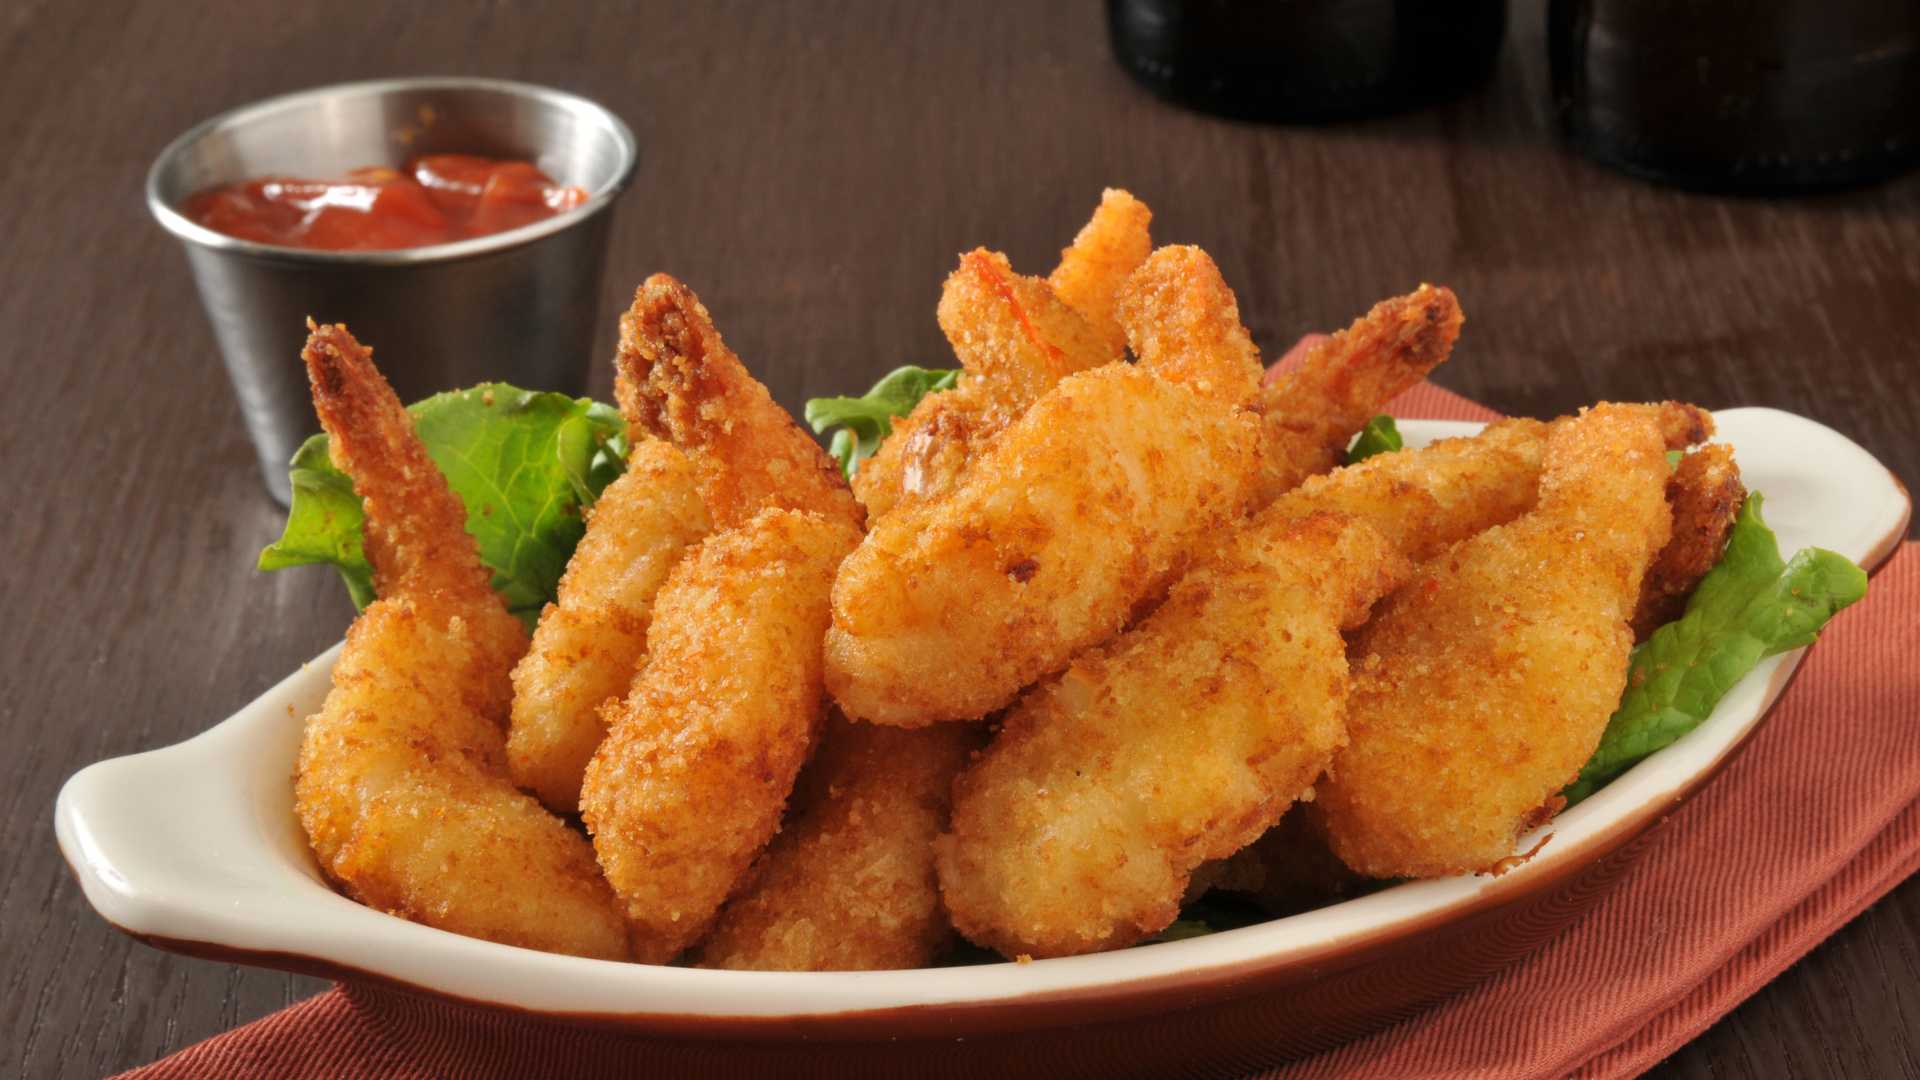 side dishes for fried shrimp